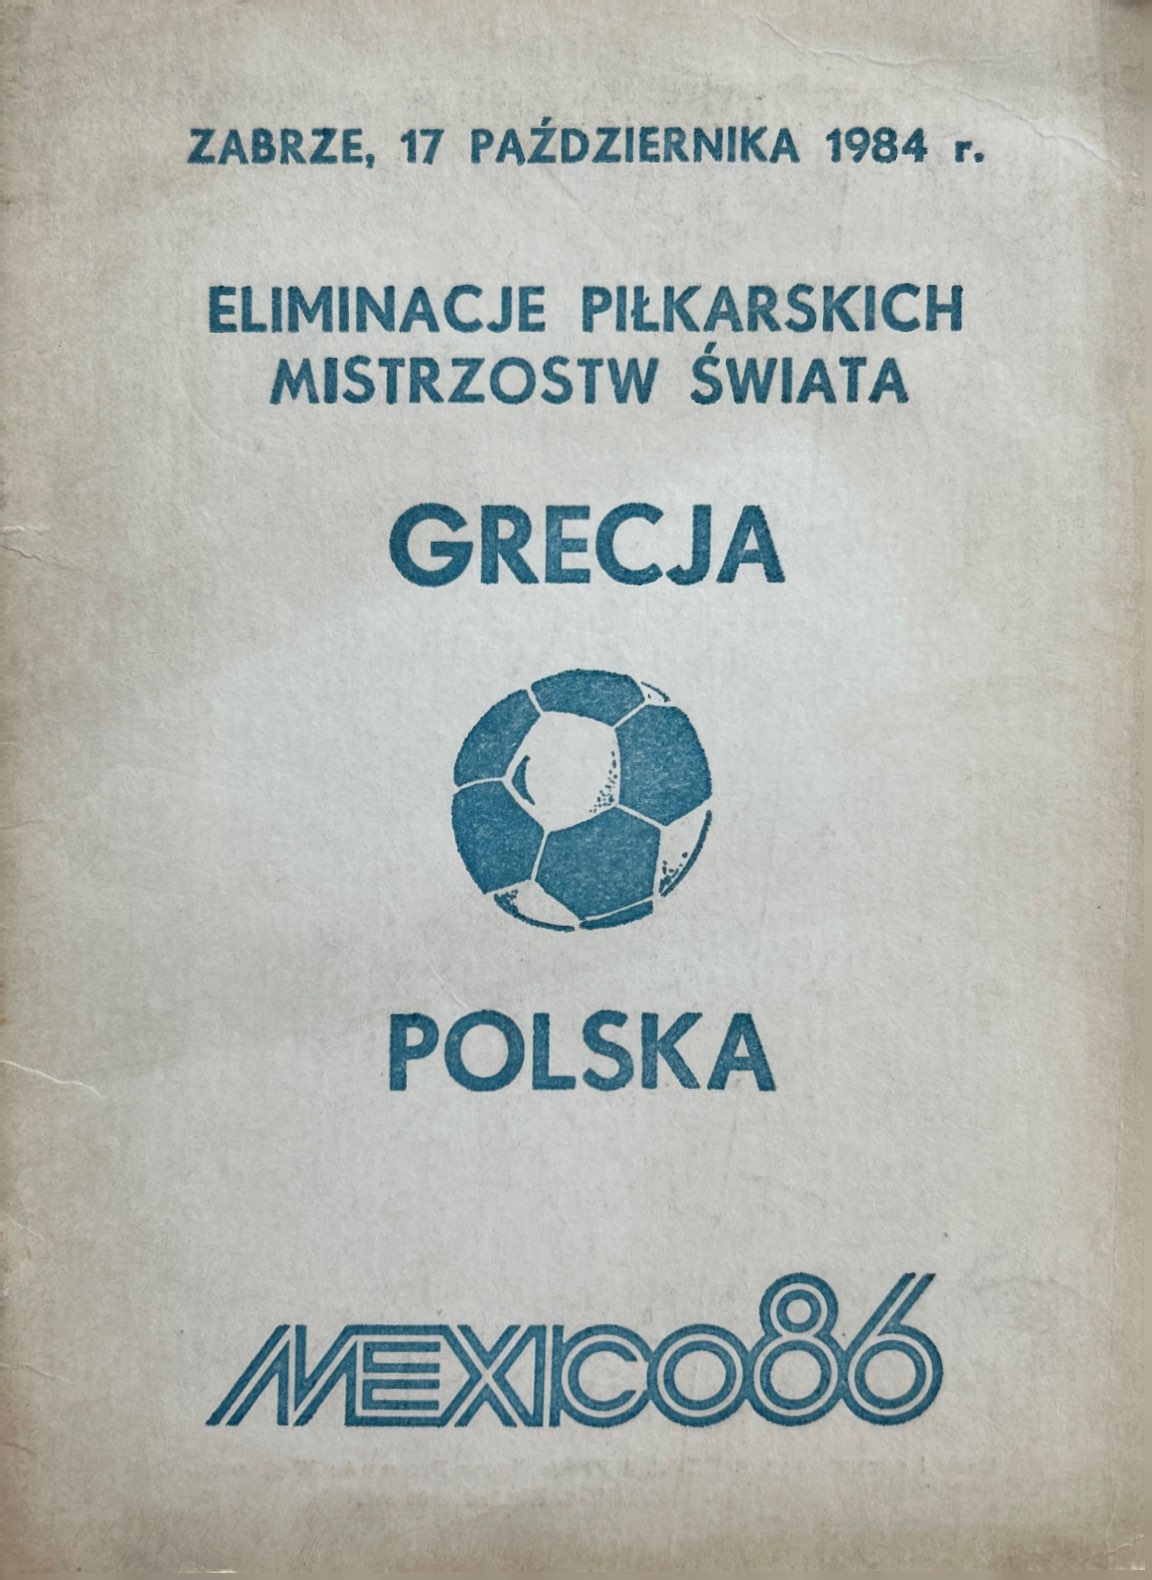 Program meczowy Polska - Grecja 3:1 (17.10.1984)